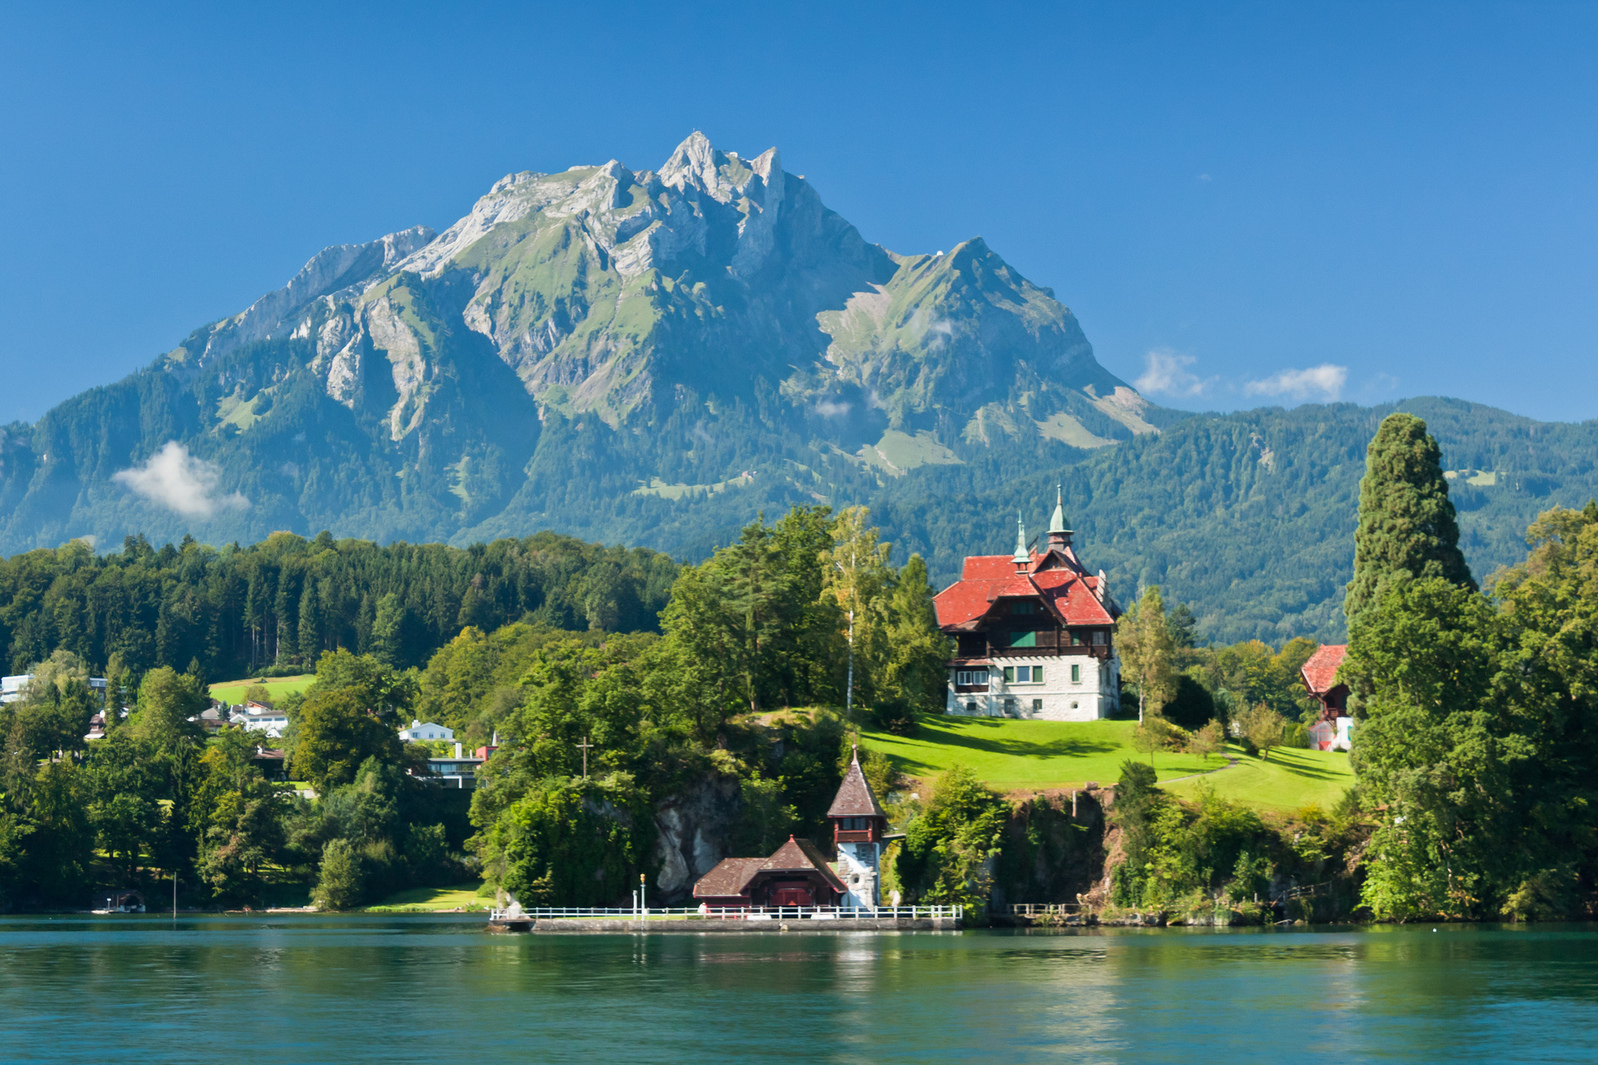 Das schweiz. Свизерленд Швейцария. Женева Альпы. Швейцария Альпы Цюрих. Озеро Шапор Швейцария.